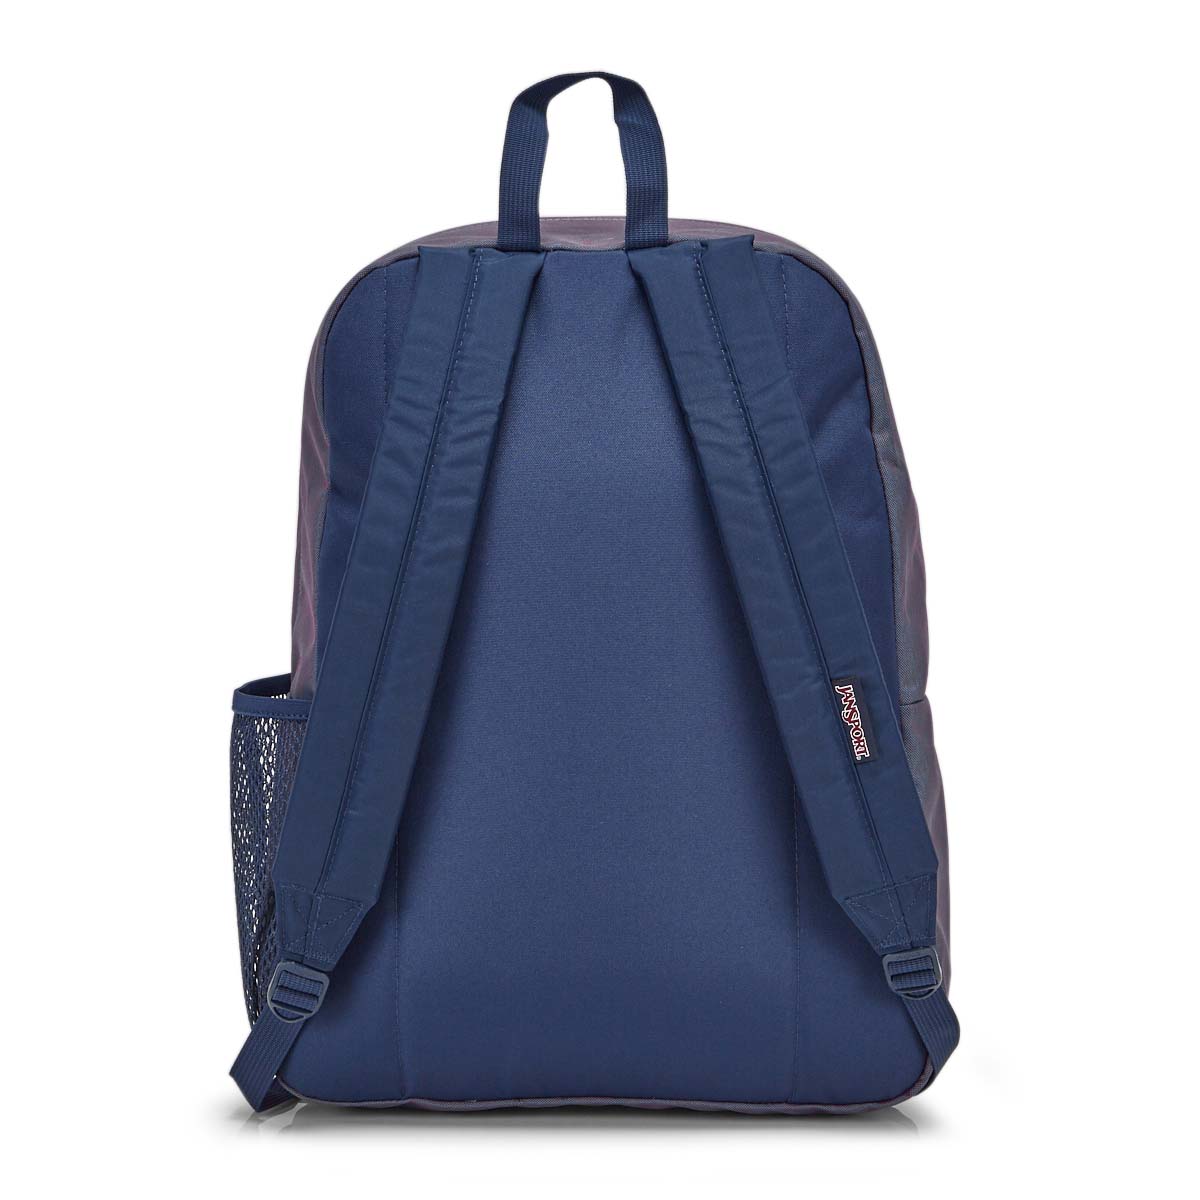 JanSport Unisex Hyperbreak Backpack - Blue Ja | SoftMoc.com